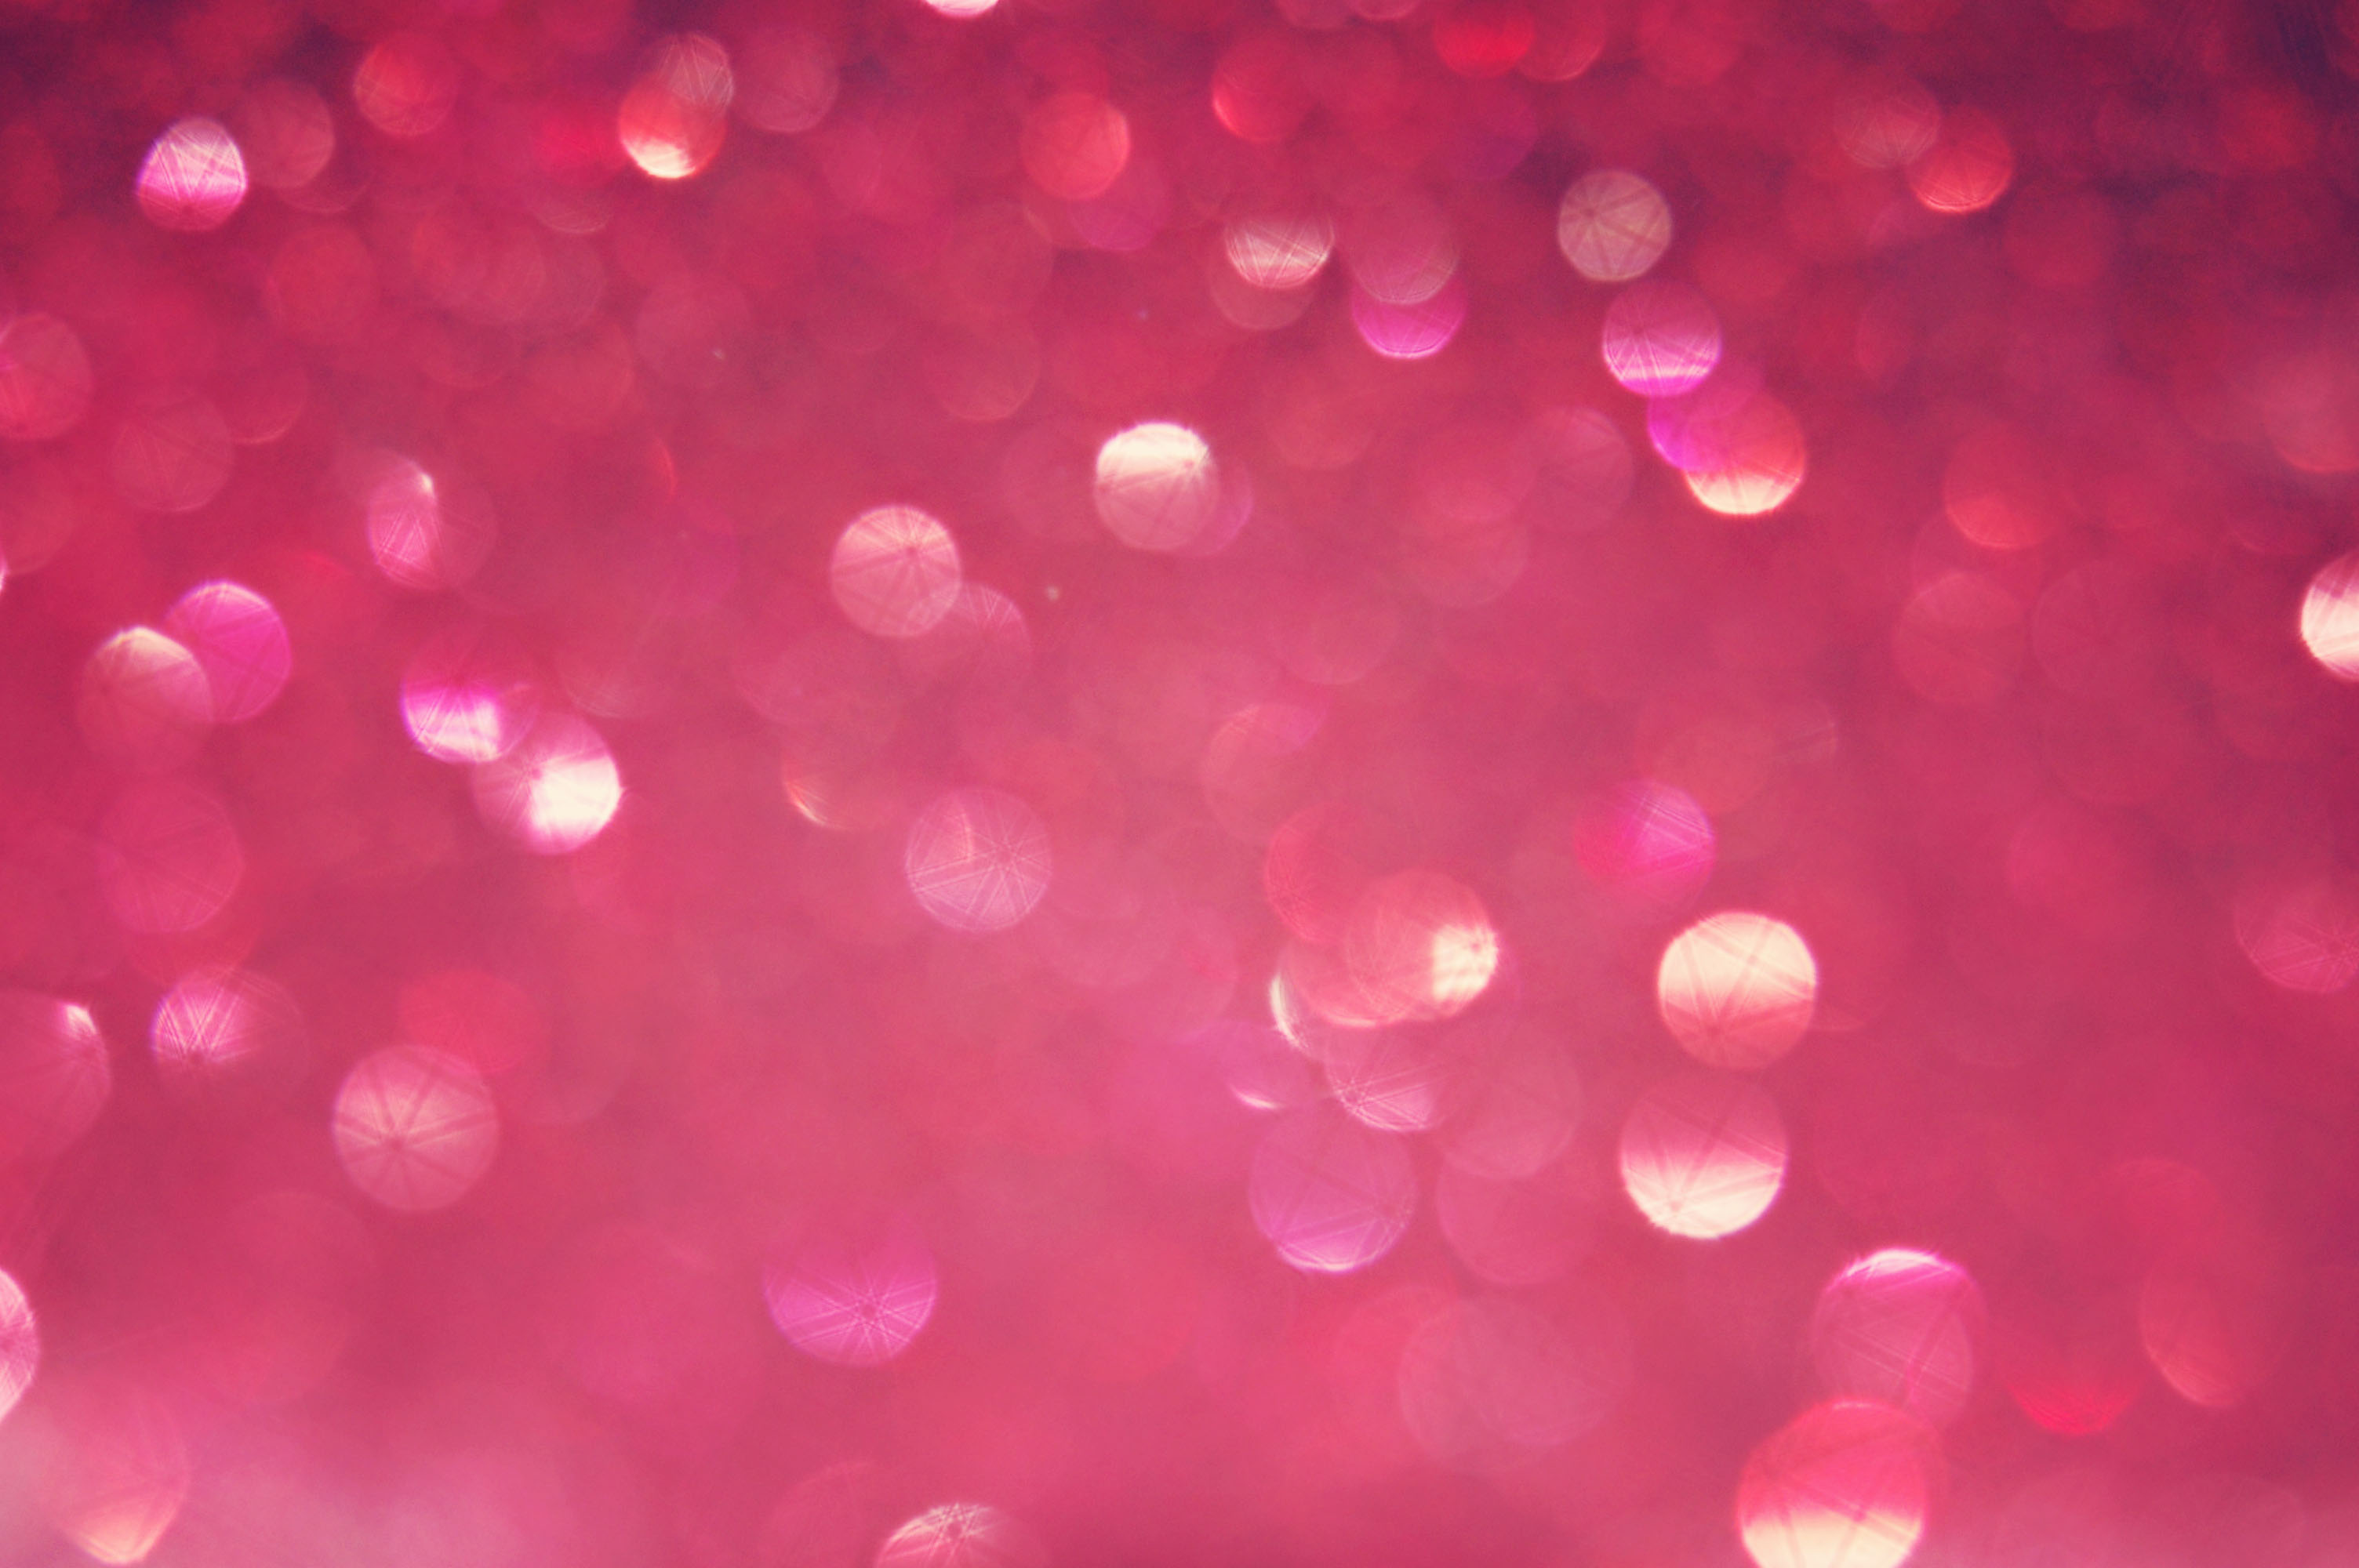 Pink Glitter Wallpaper